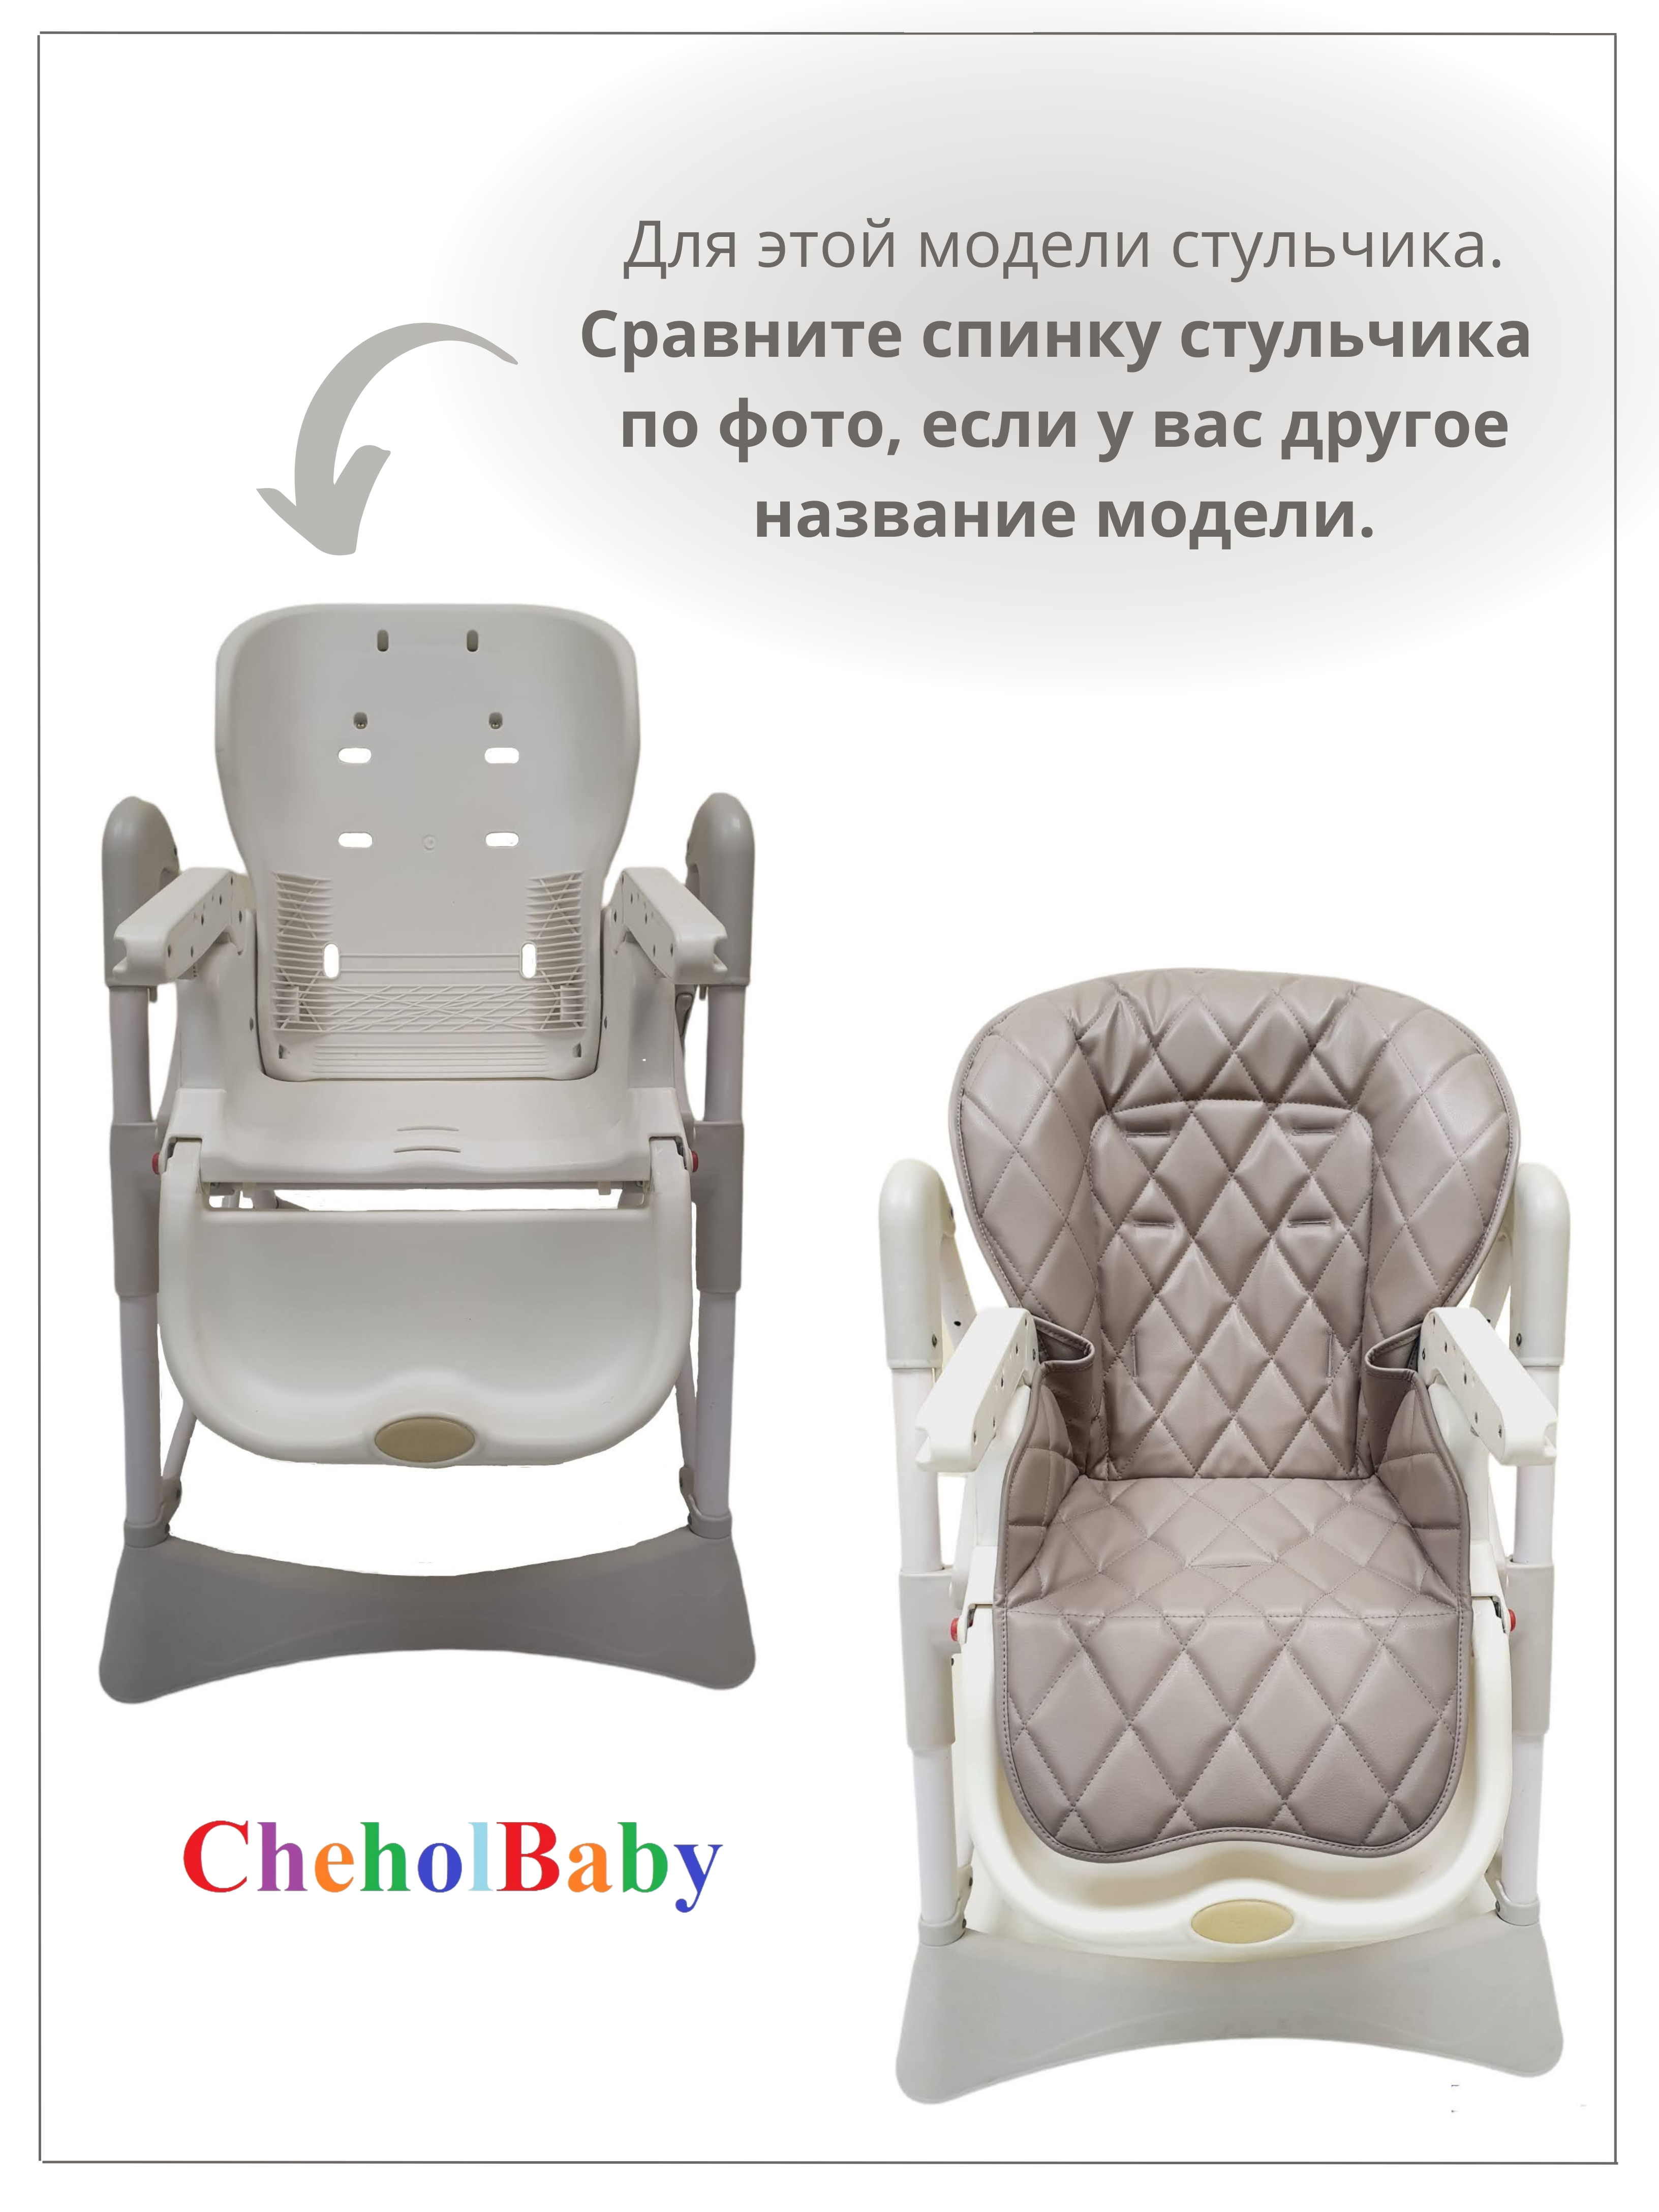 Чехол на детский стульчик CheholBaby на детский стульчик для кормления - фото 3